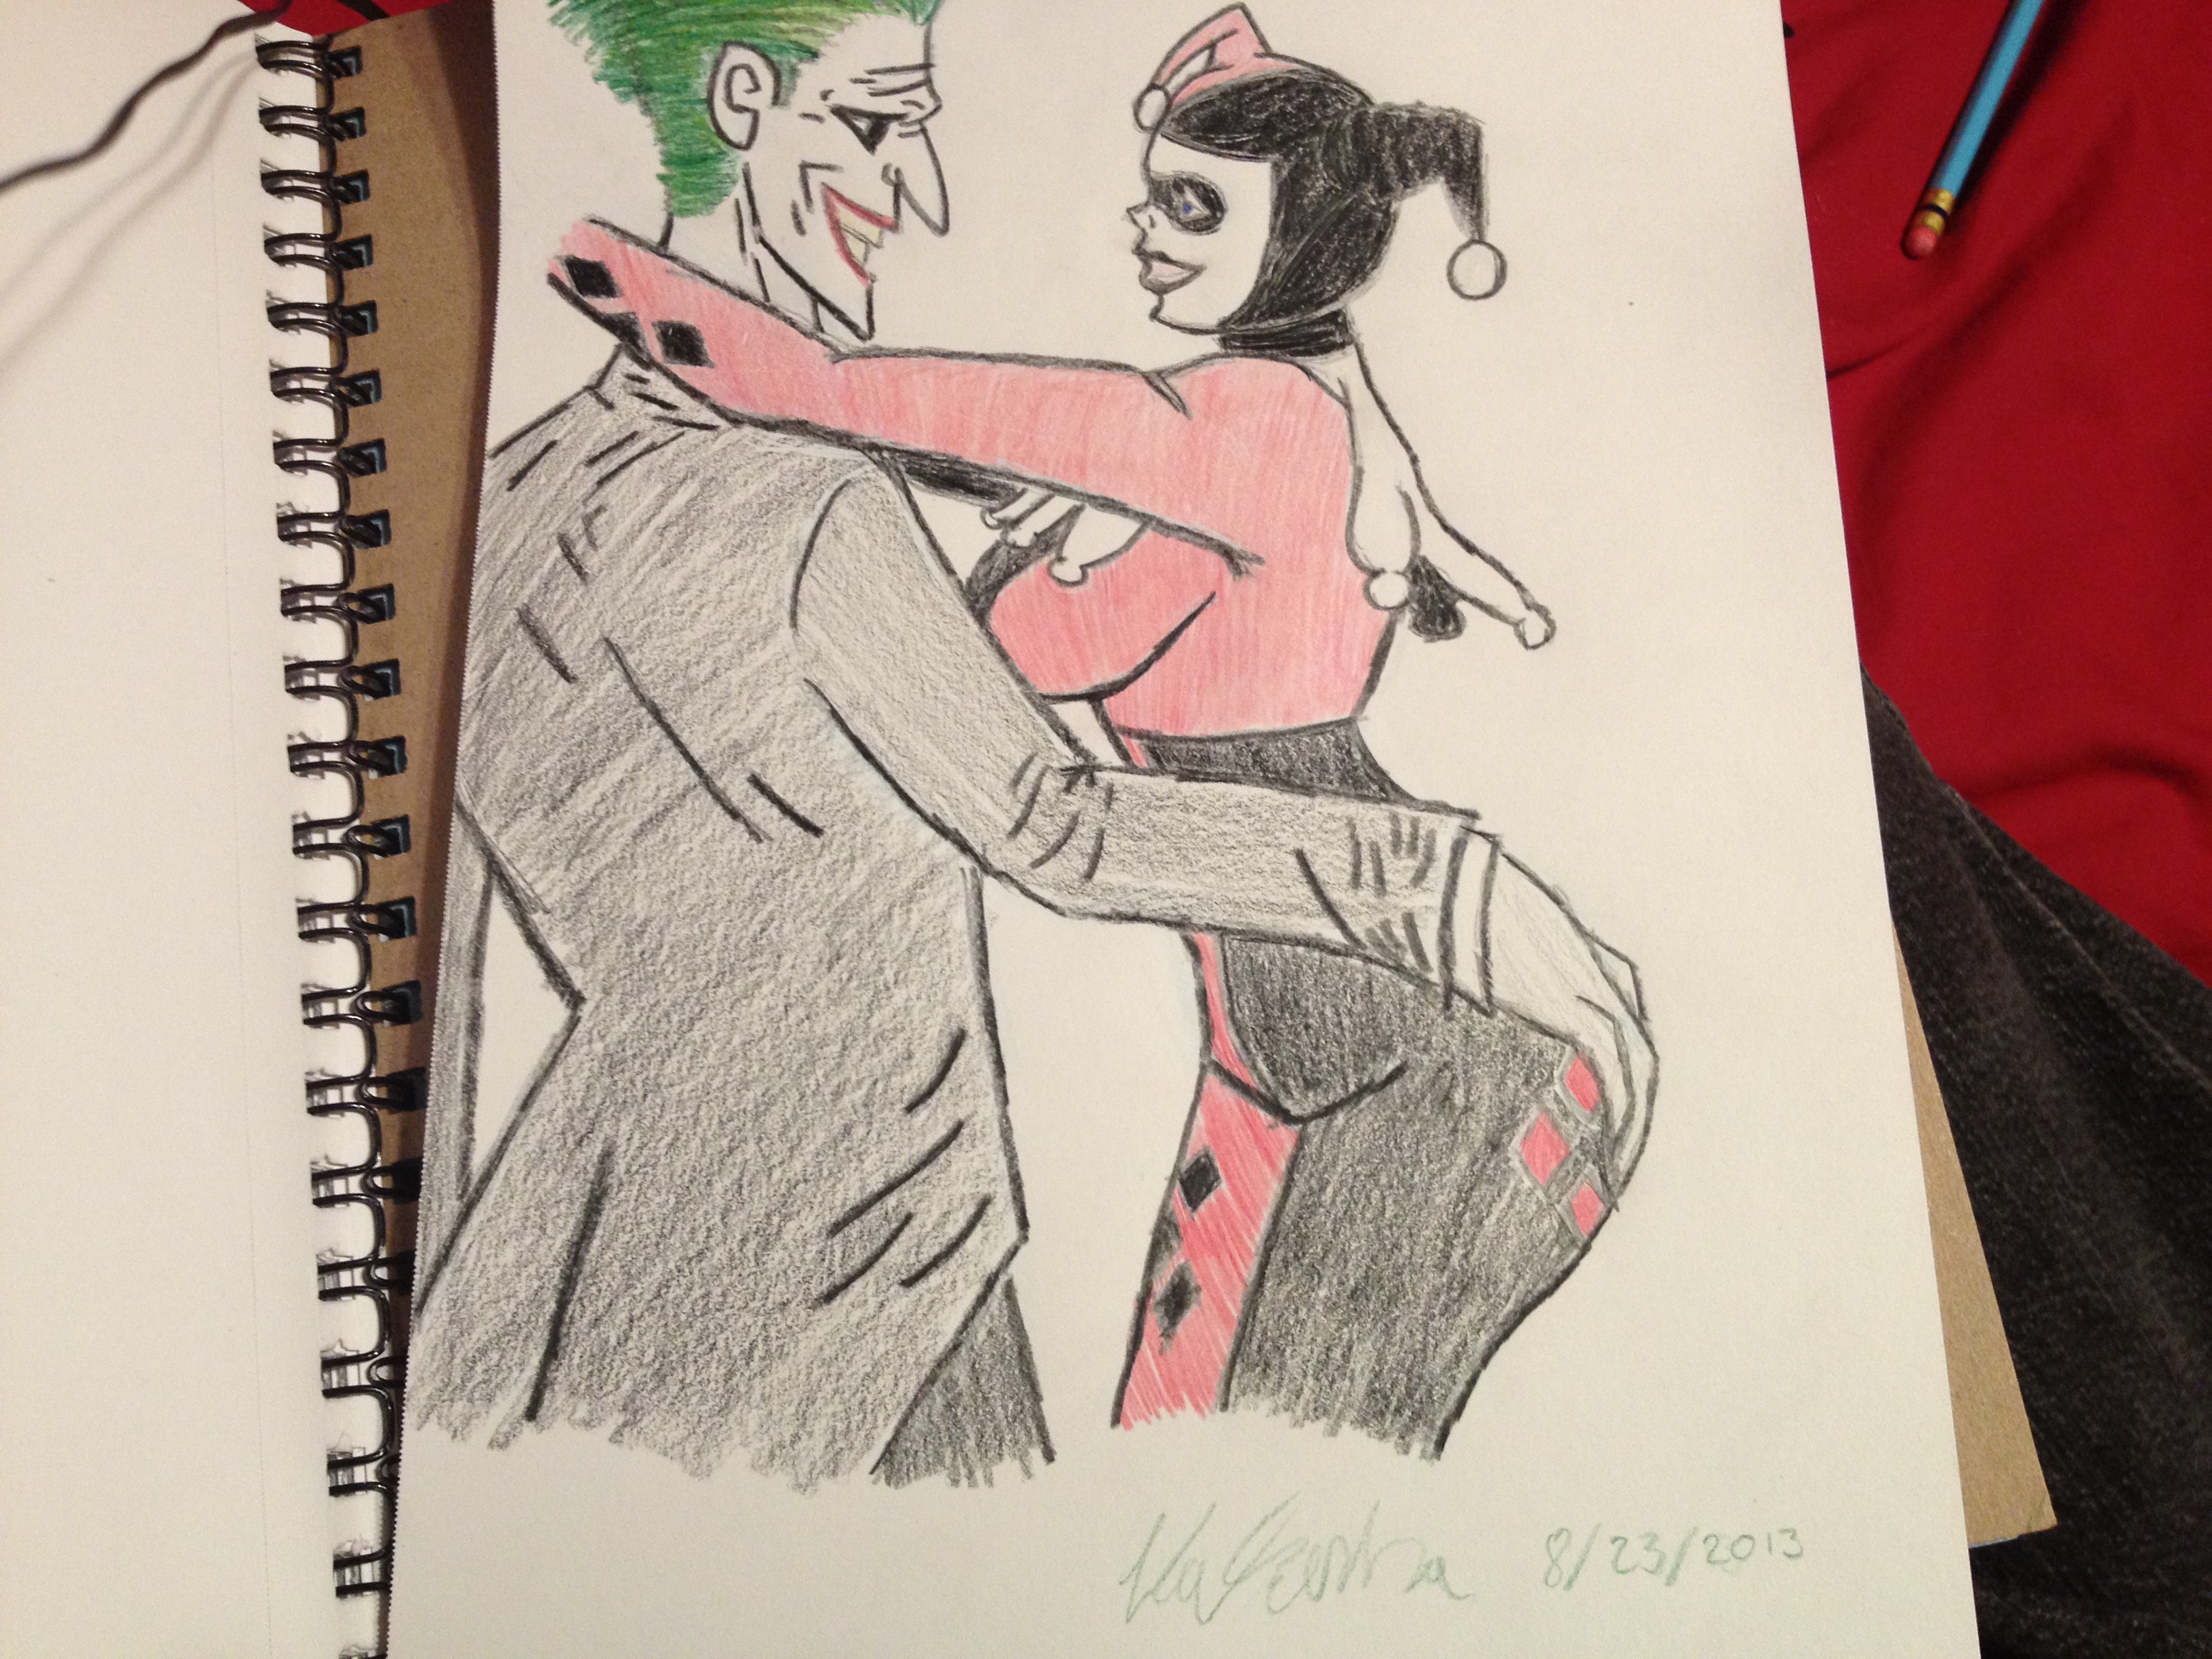 Old Joker and Quinn